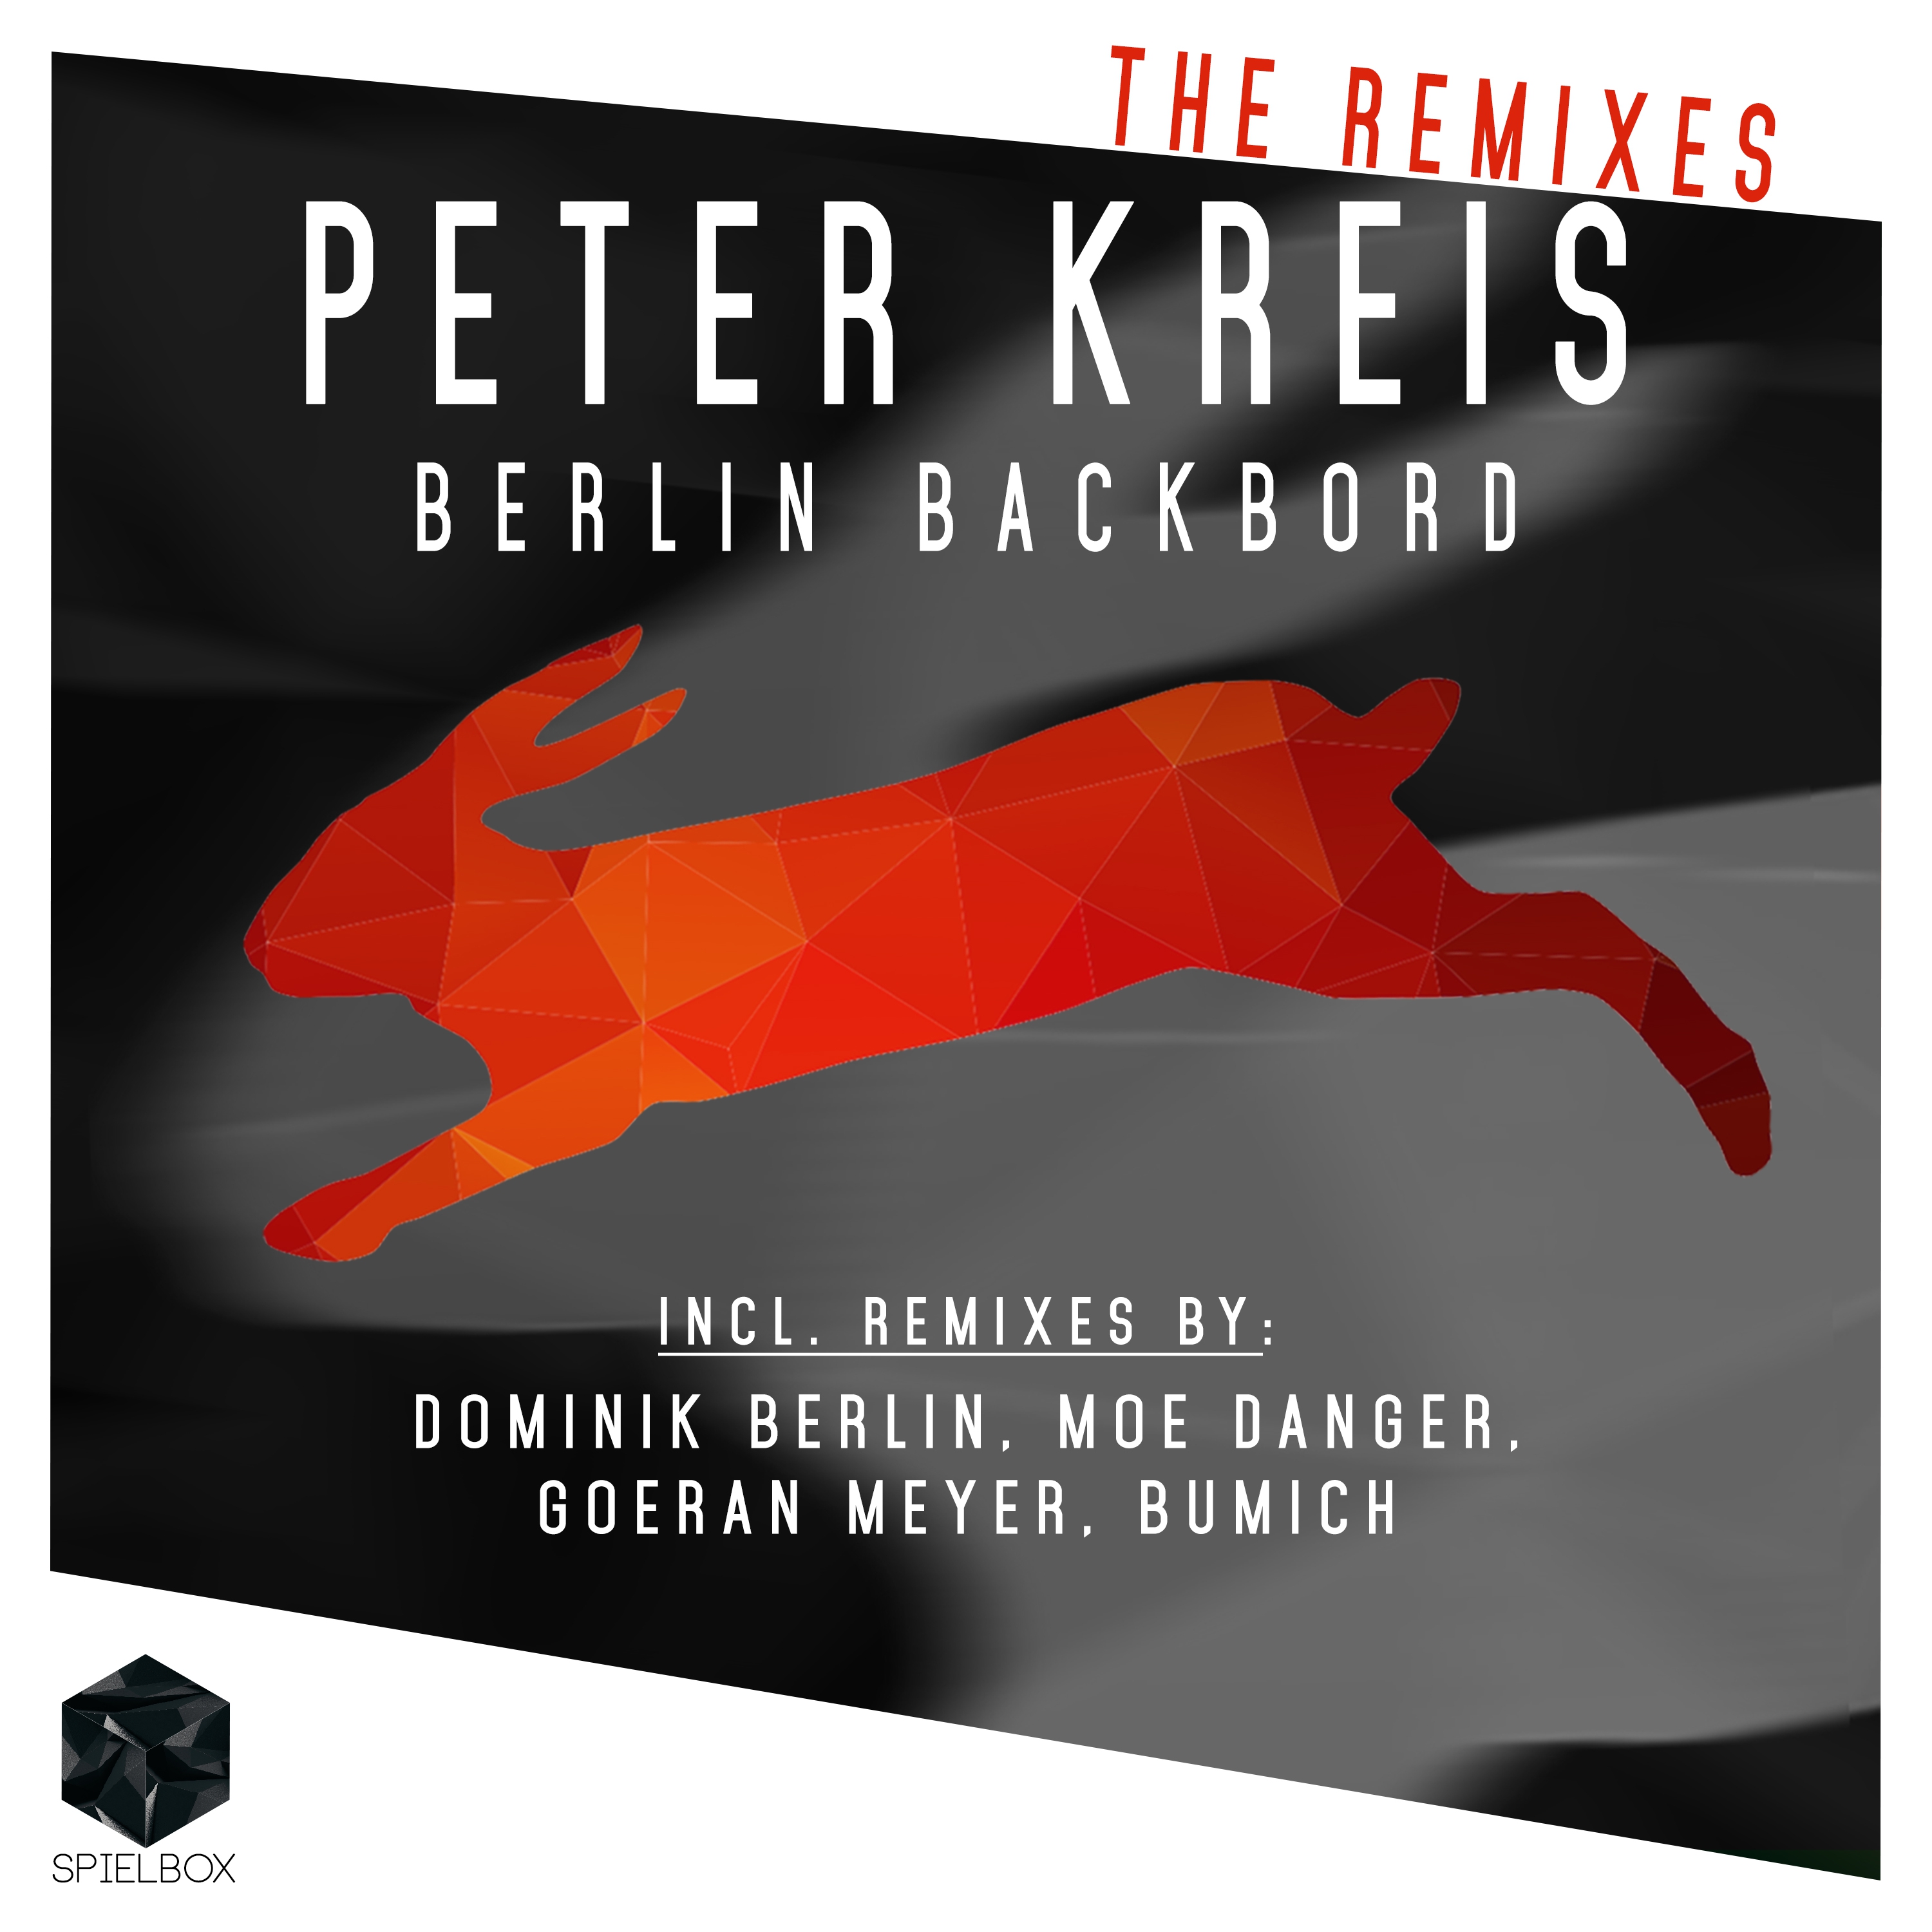 Berlin Backbord (Goeran Meyer Remix)